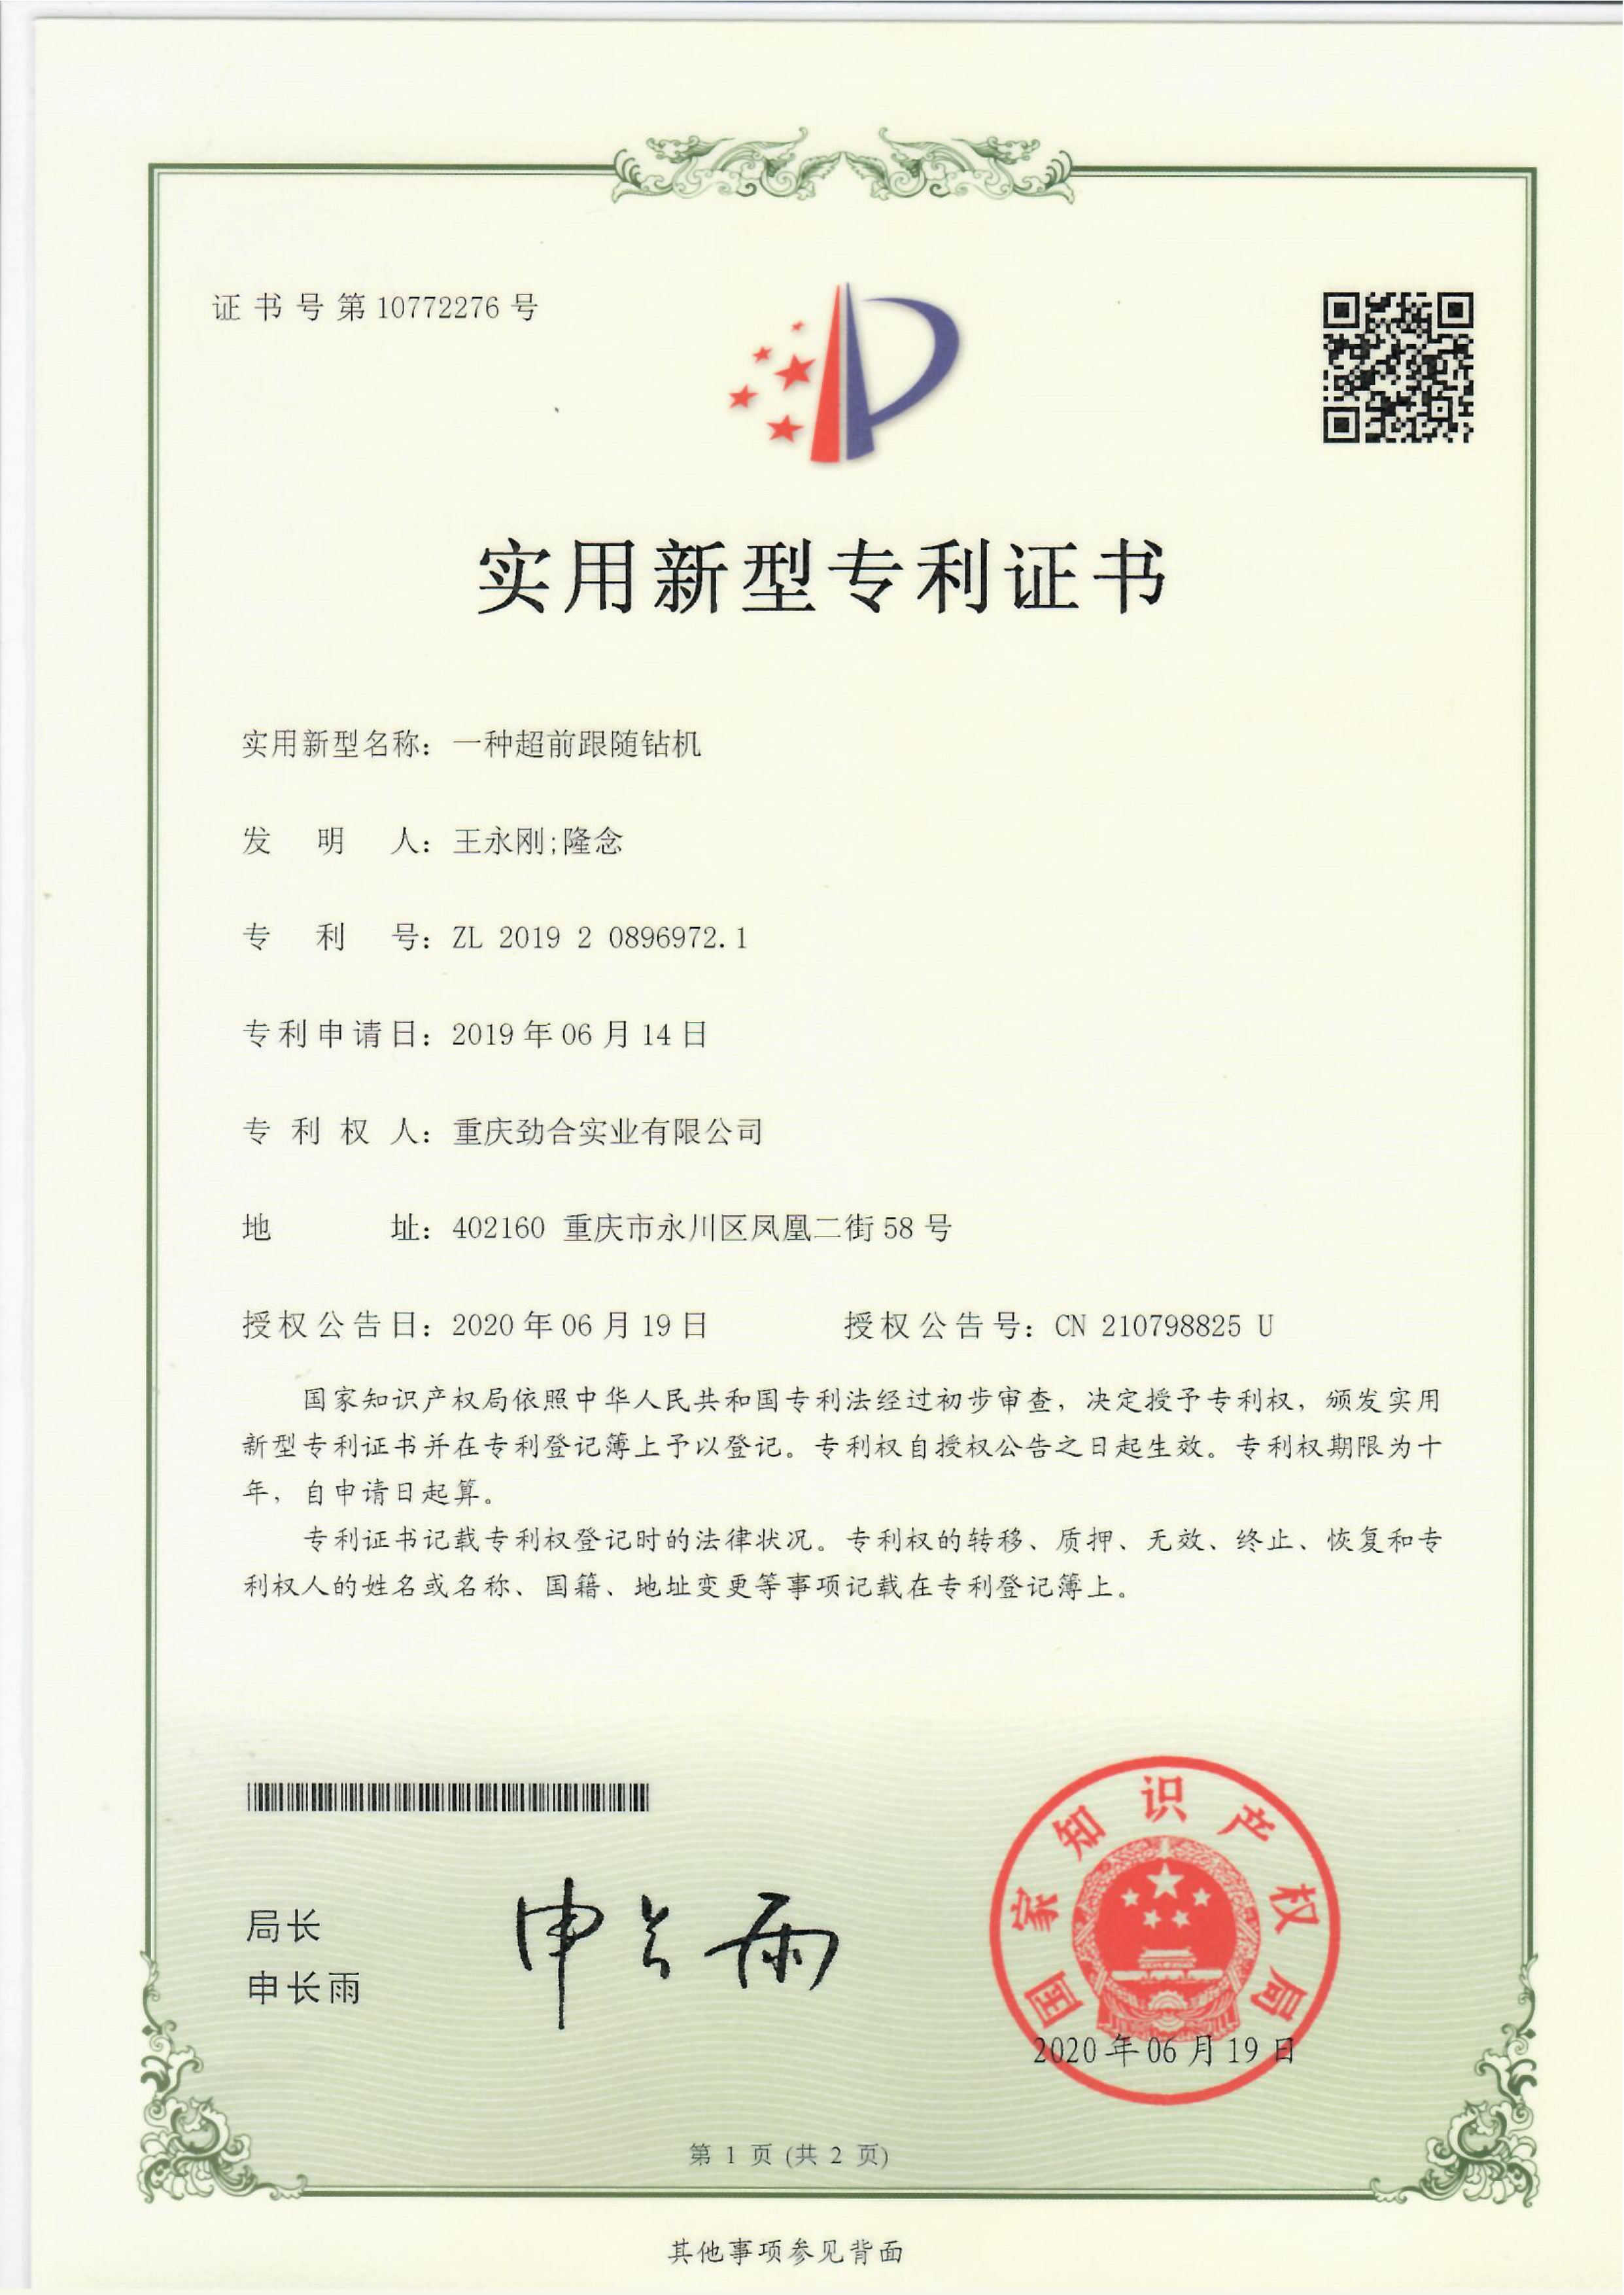 一种超前跟随BET体育在线官方网站(中国)有限公司ZL 2019 2 0896972.1